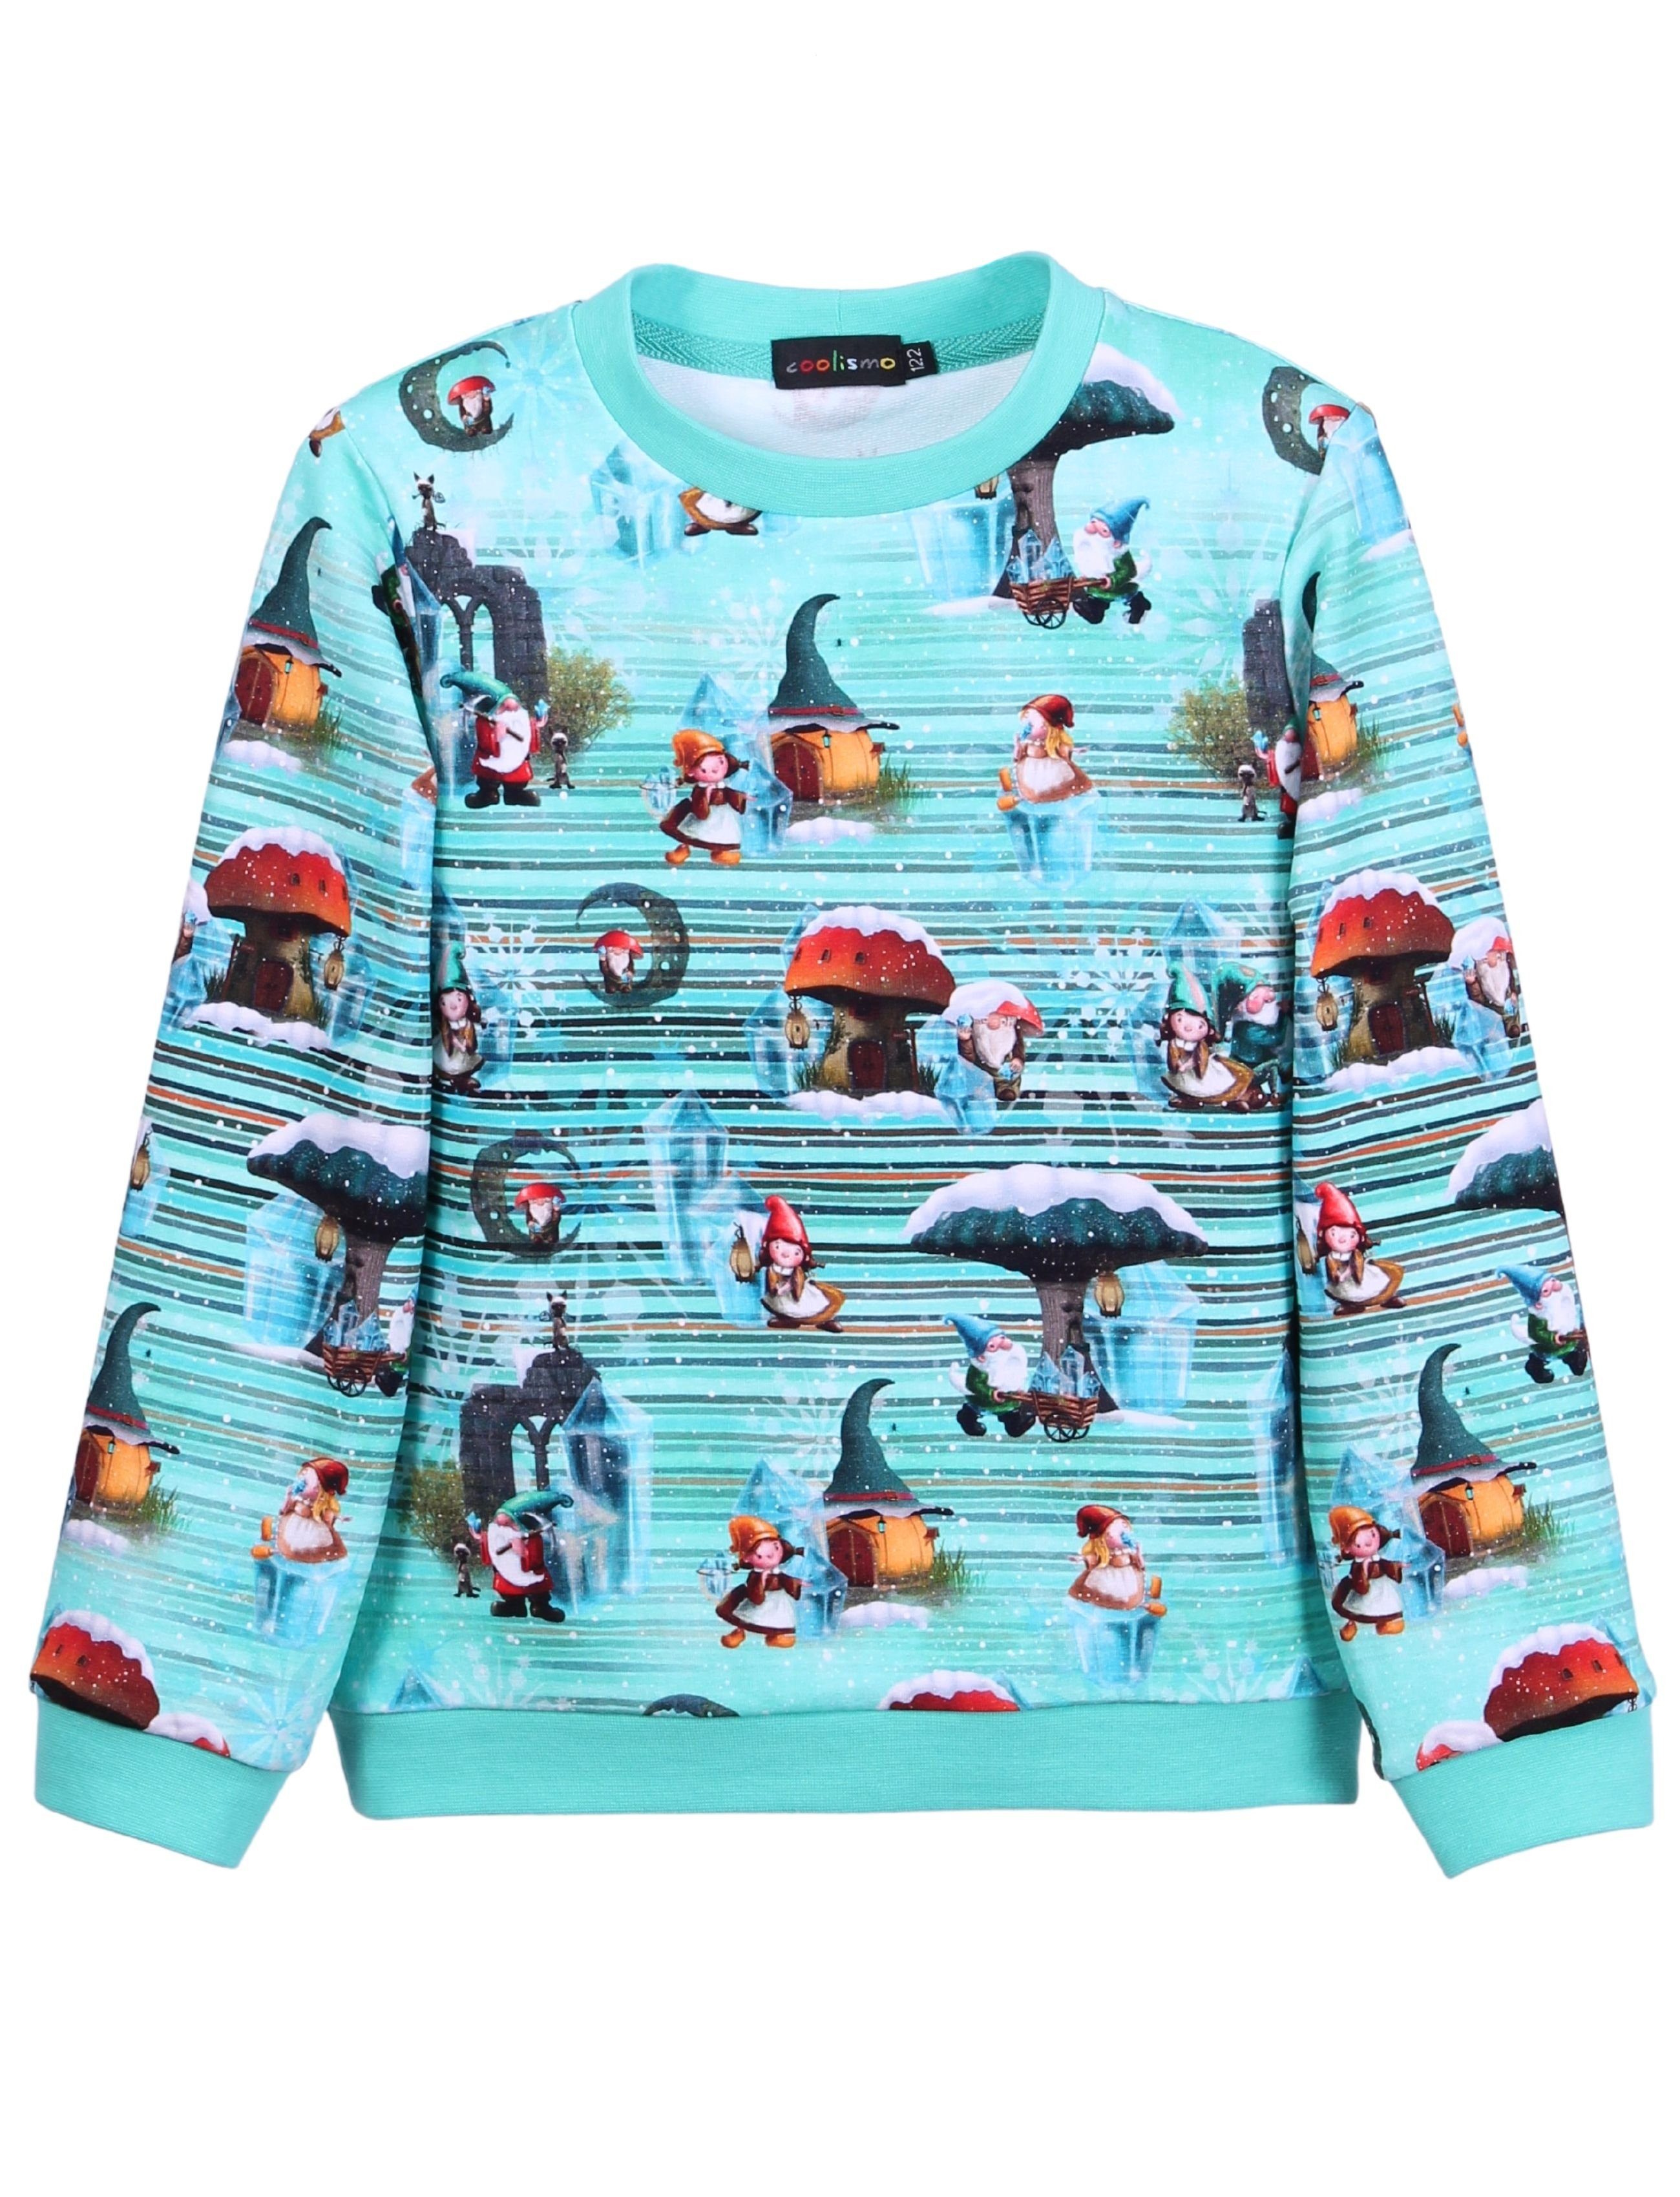 coolismo Sweater Kinder Sweatshirt Mädchen mit Made Zwergen-Print Europa Pullover in Baumwolle, niedlichem